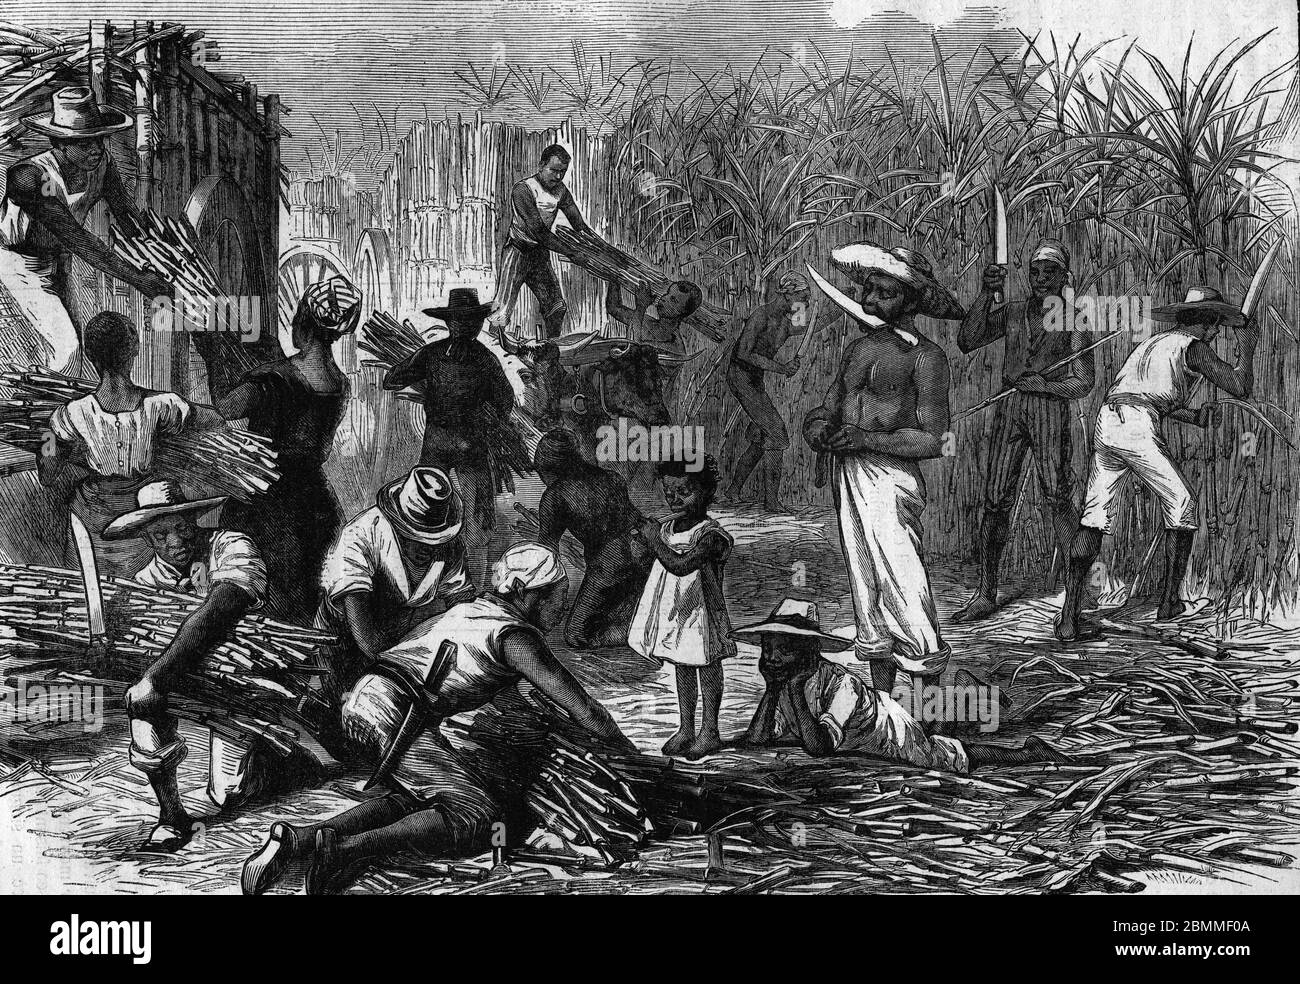 Esclavage : 'Esclaves travaillant dans les plantations de canne a sucre aux Antilles' Gravure 1880 - (slaves working in the sugar cane plantations, in Stock Photo